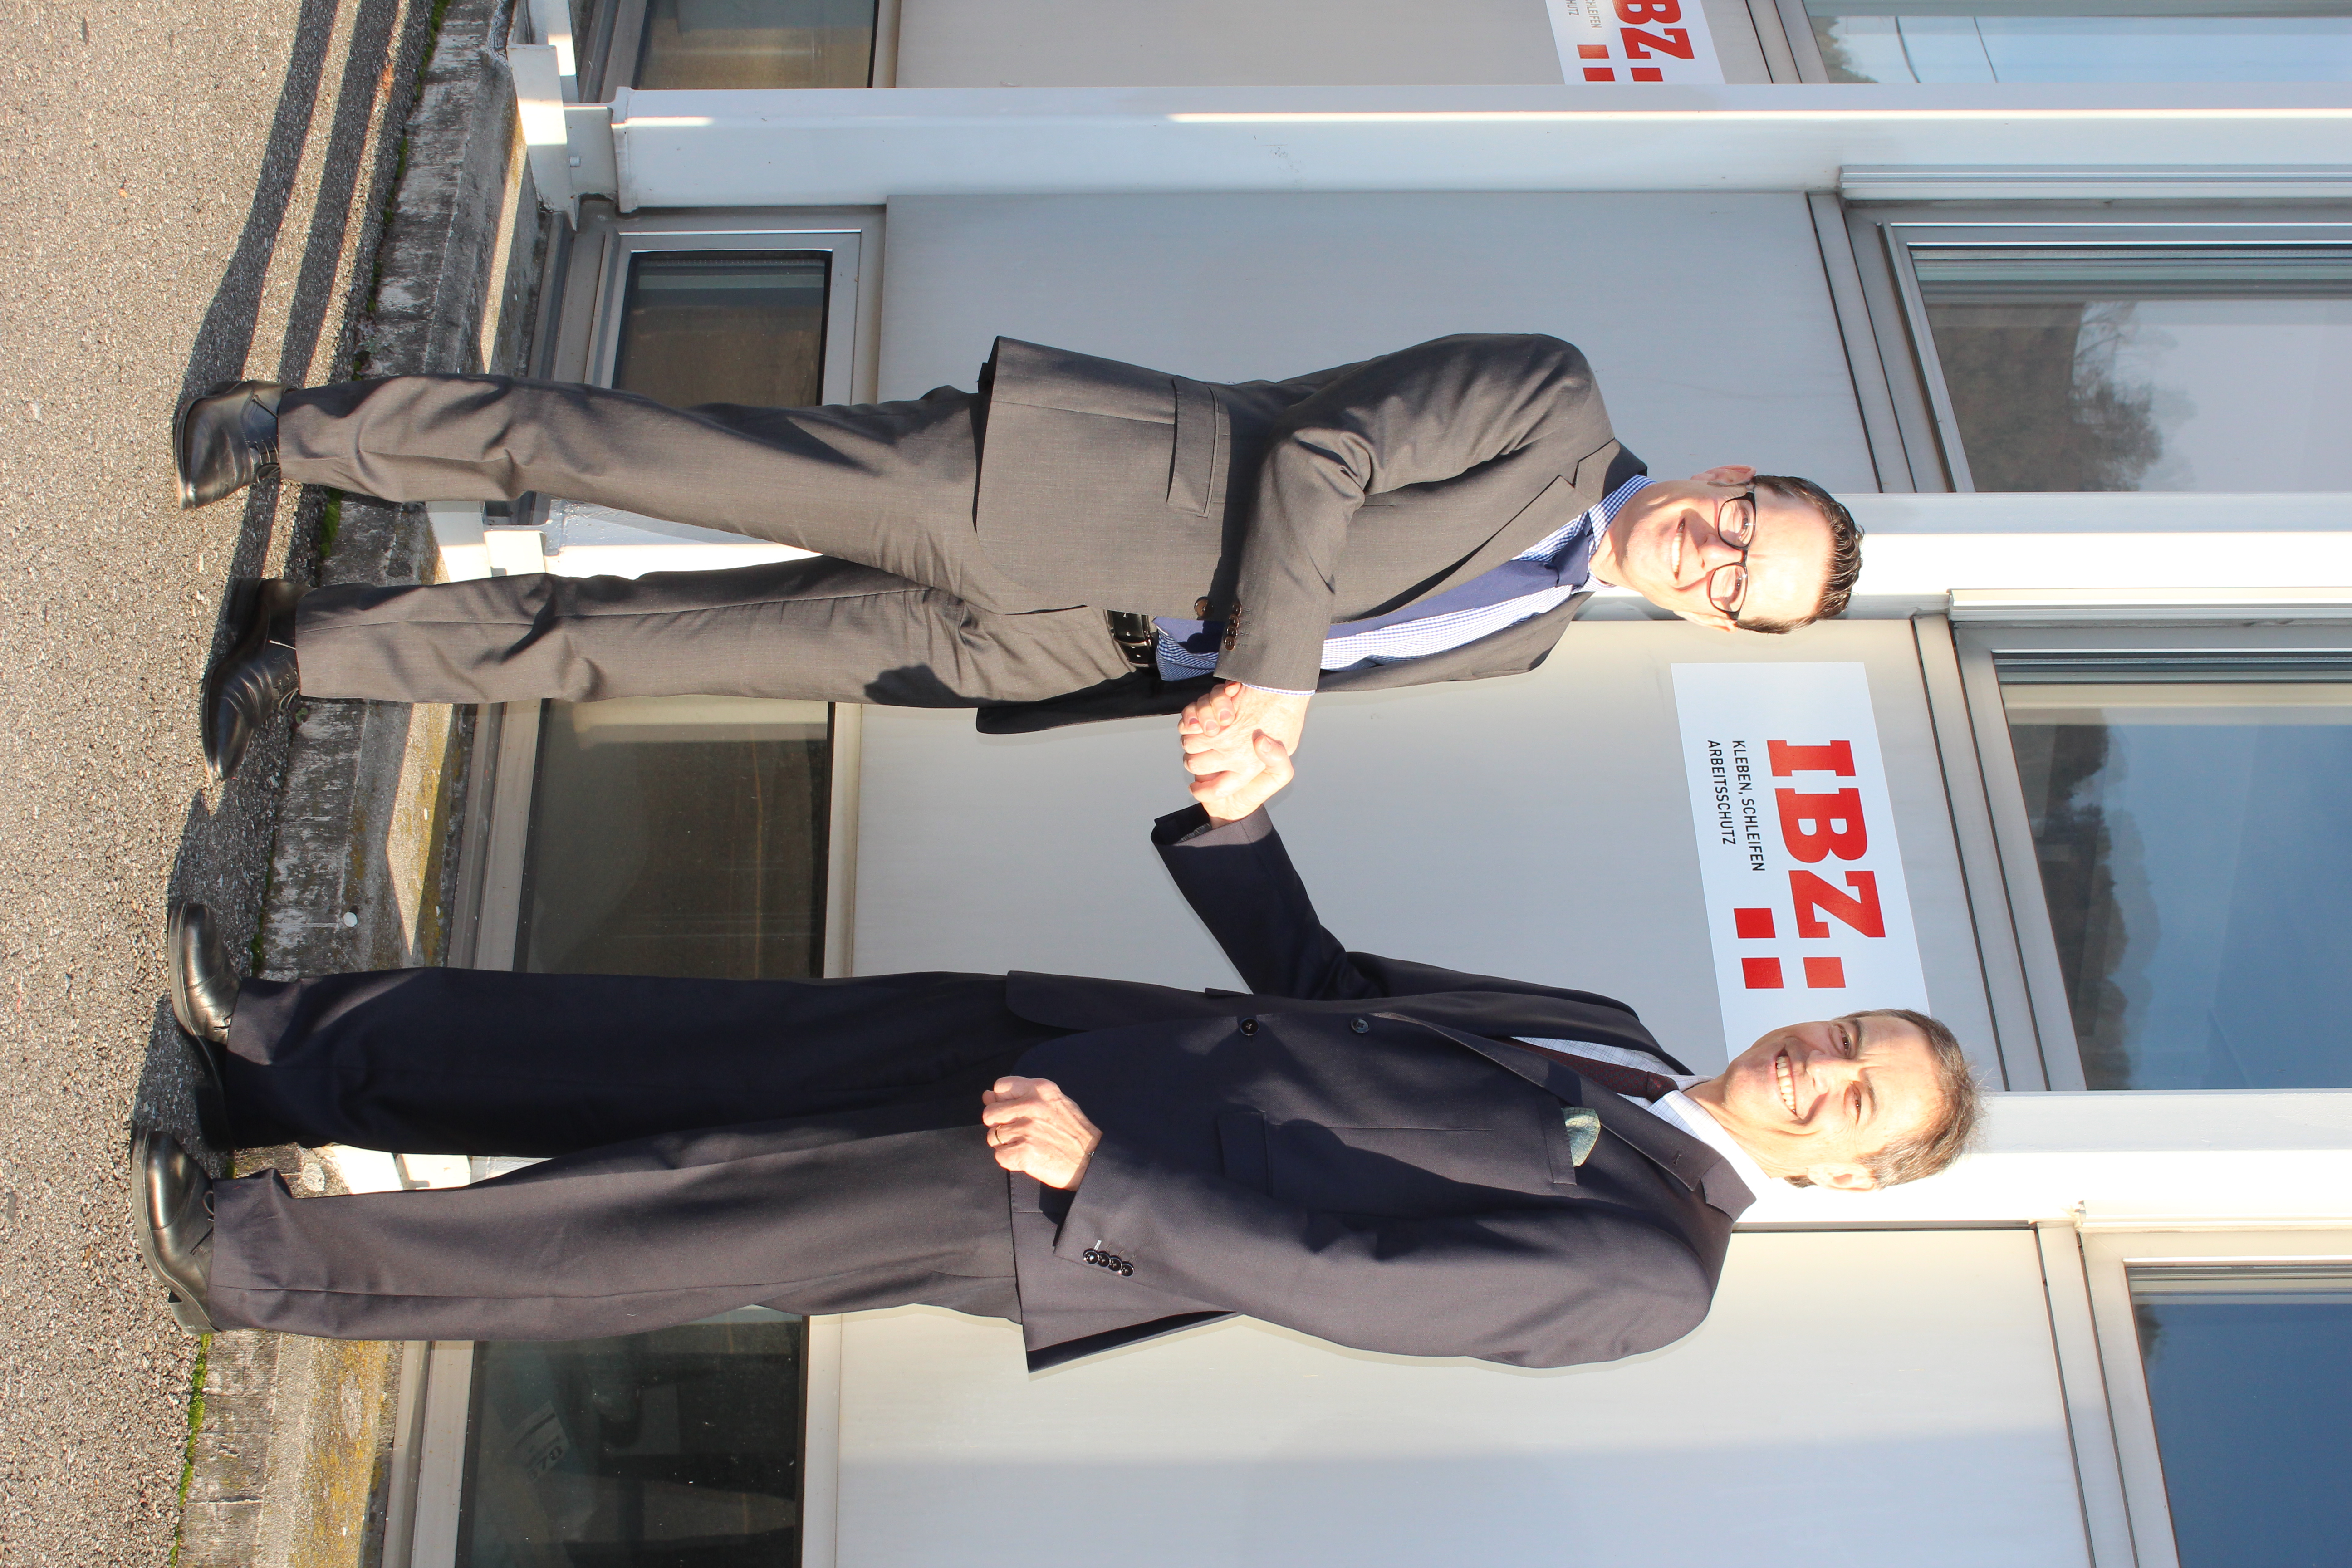 Schlüsselübergabe der IBZ Industrie AG zwischen Urs Egli und Roger Fehlmann. Beide stehen vor dem IBZ Industrie AG Gebäude und geben sich die Hand